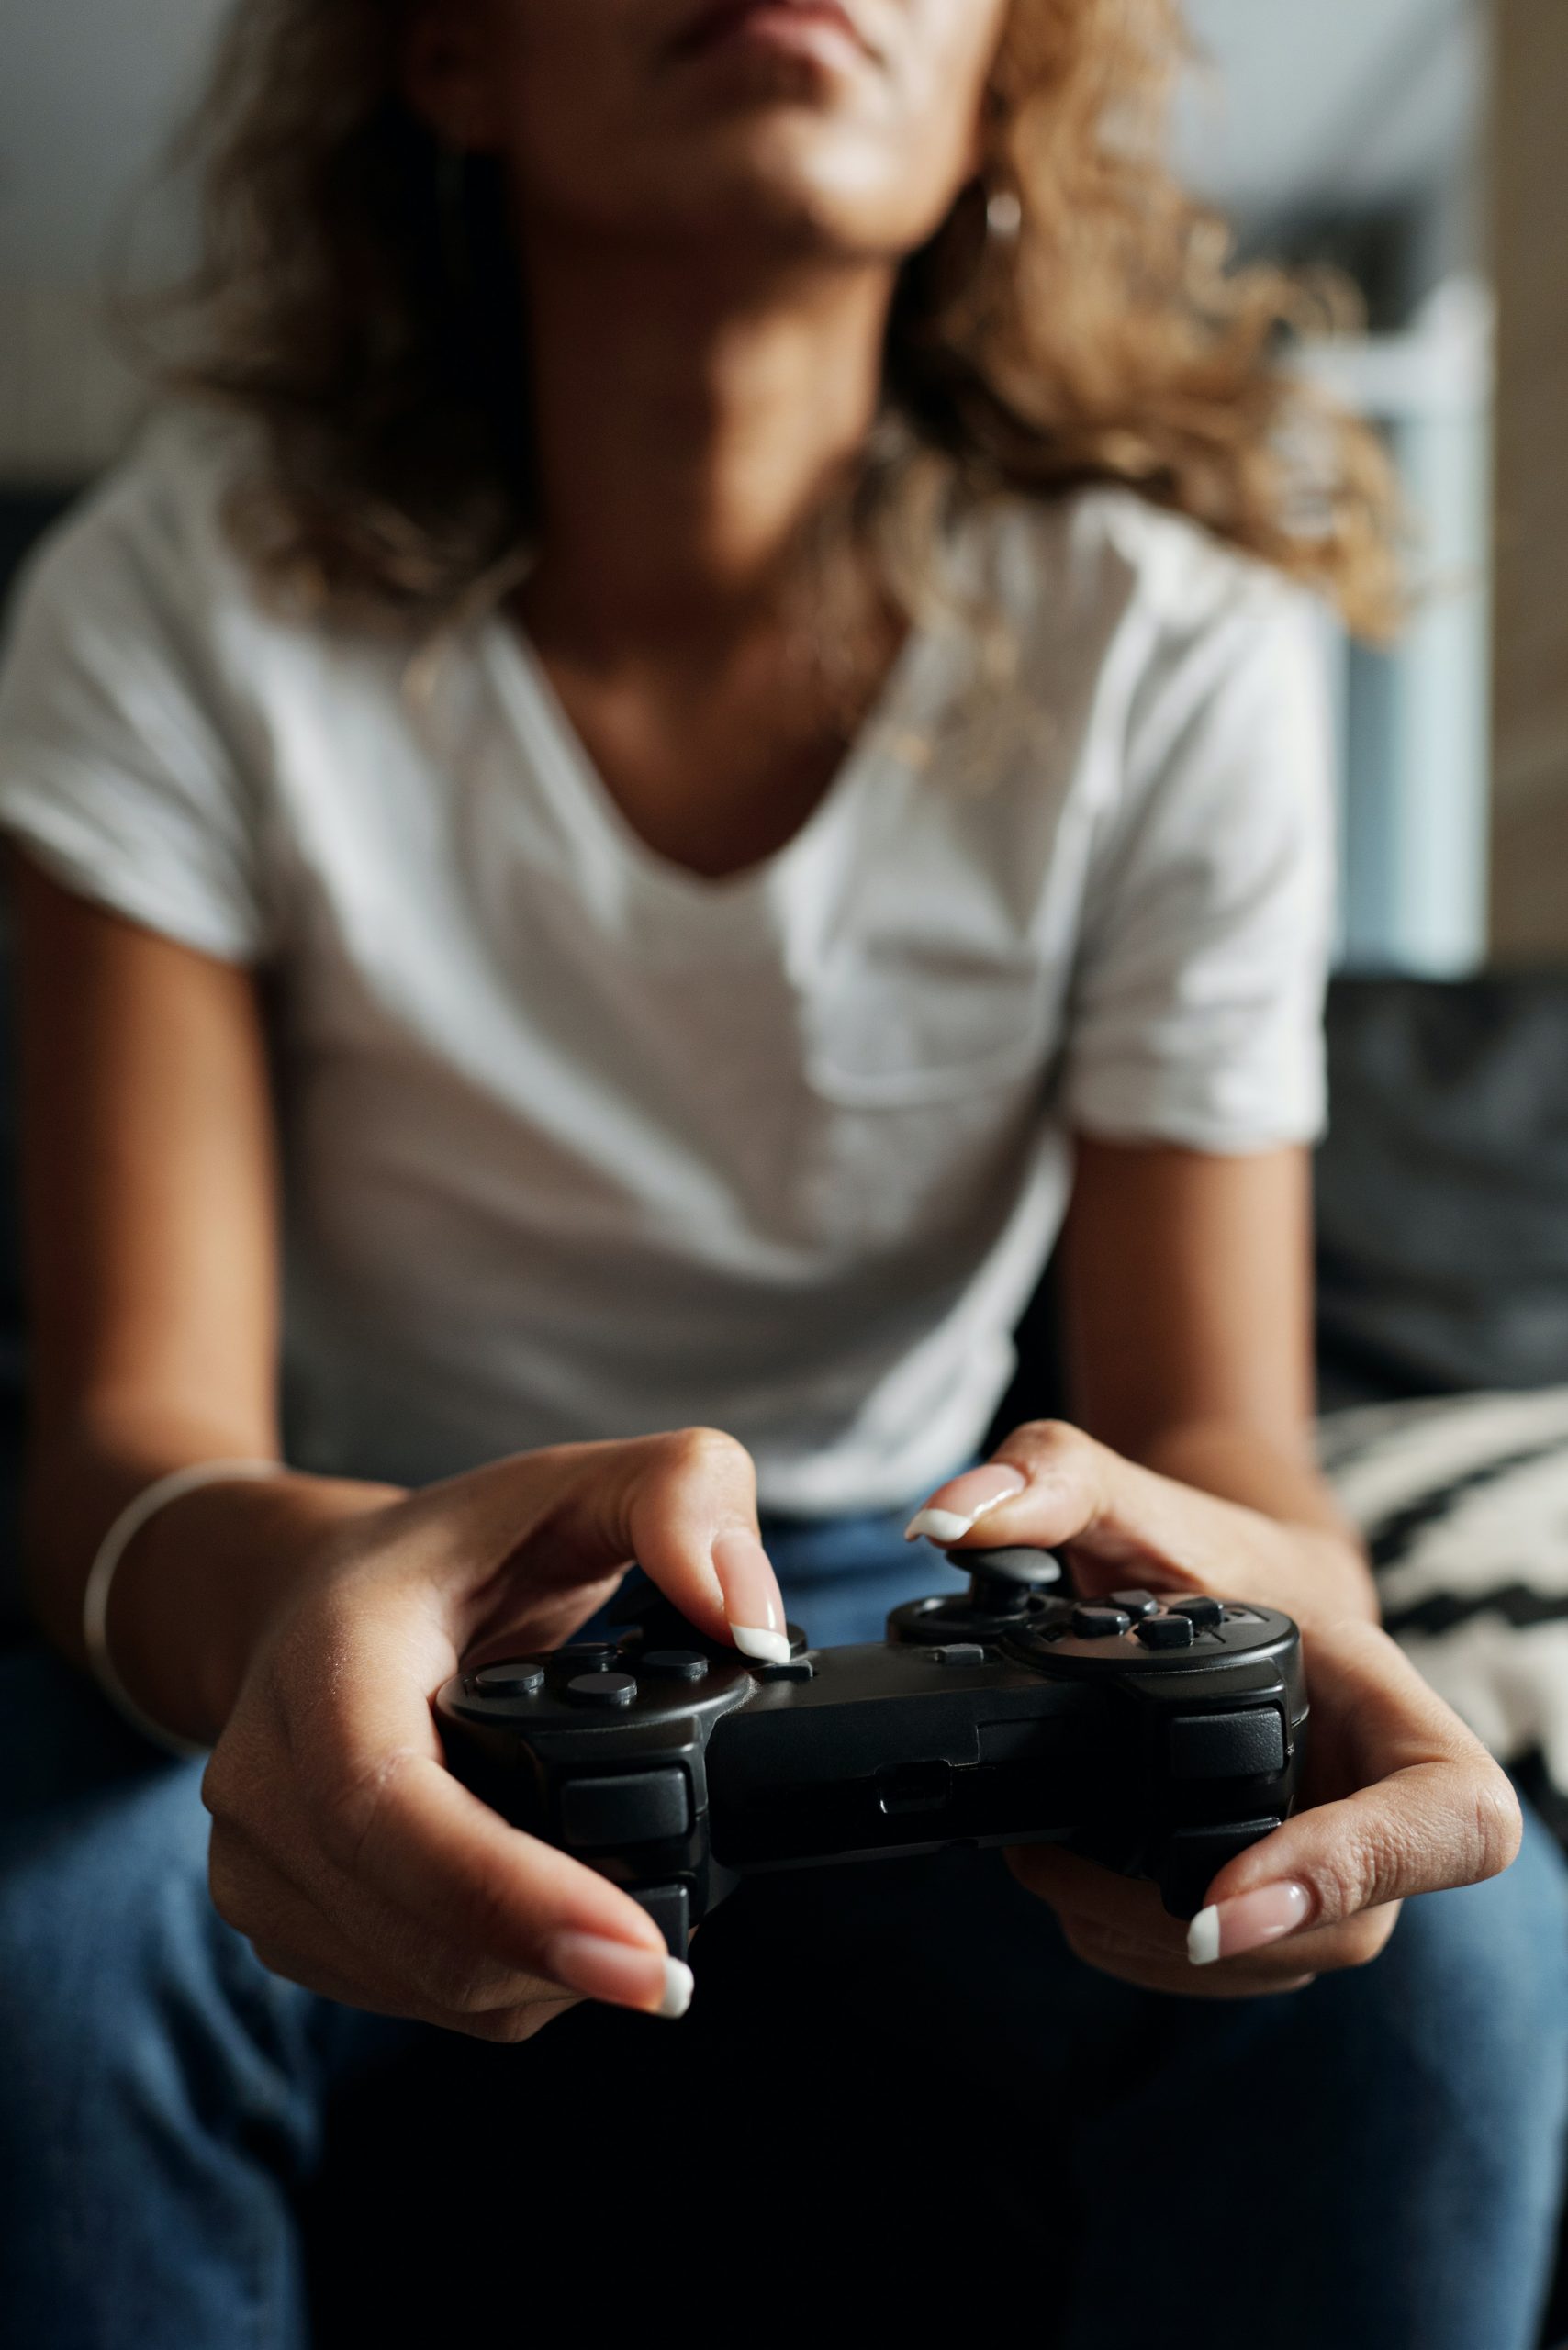 fortnite ayudo a niños con problemas videojuegos